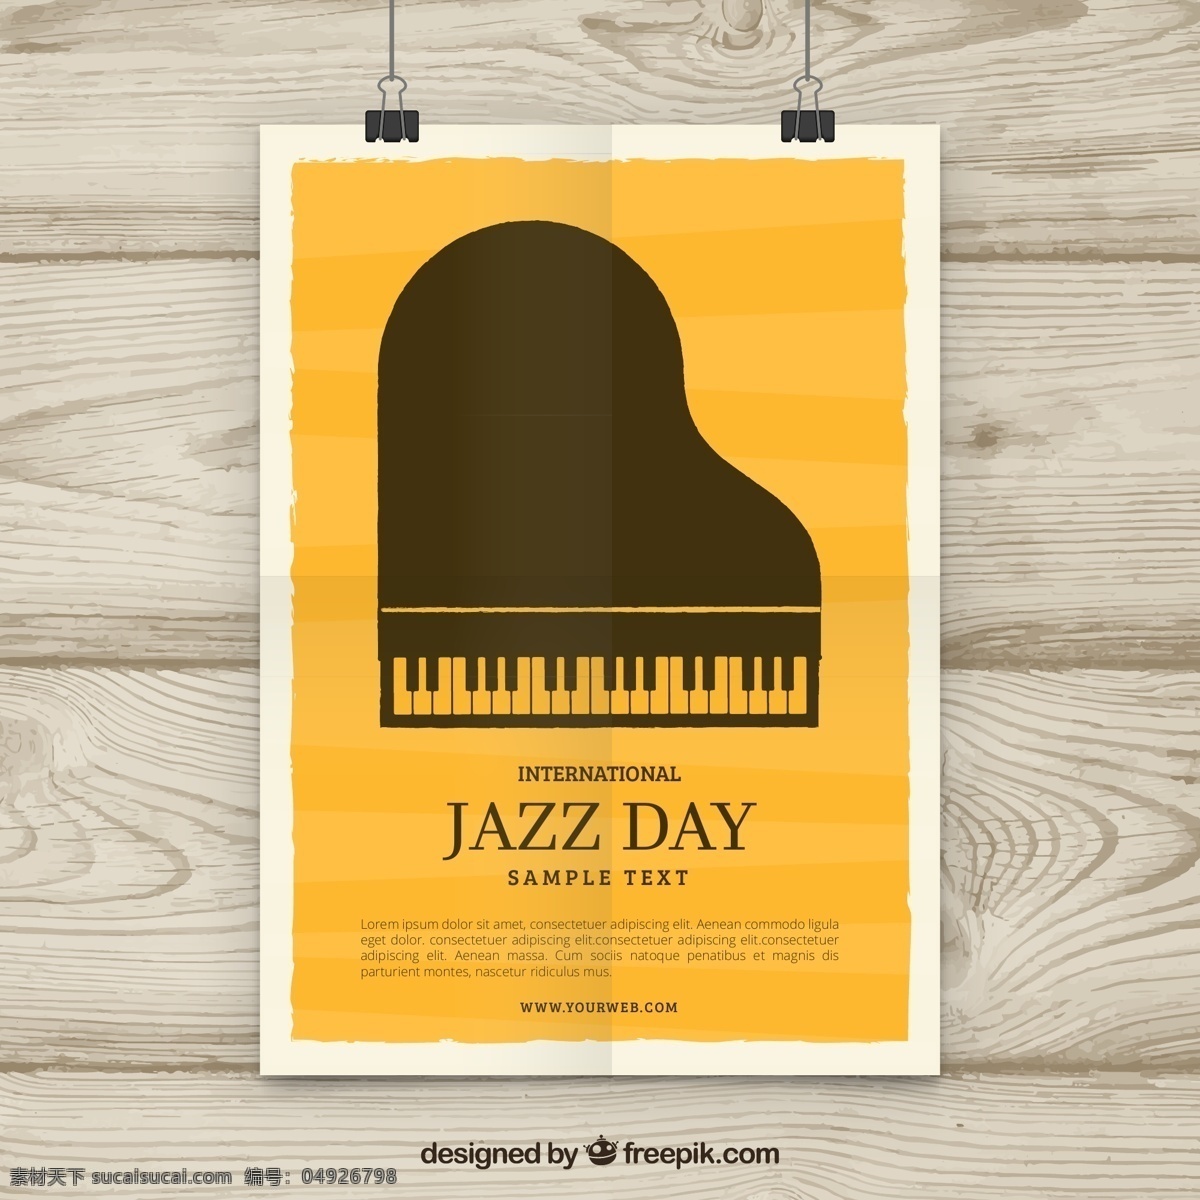 钢琴海报 爵士乐 钢琴 海报 音乐 国际爵士乐日 矢量图 文化艺术 舞蹈音乐